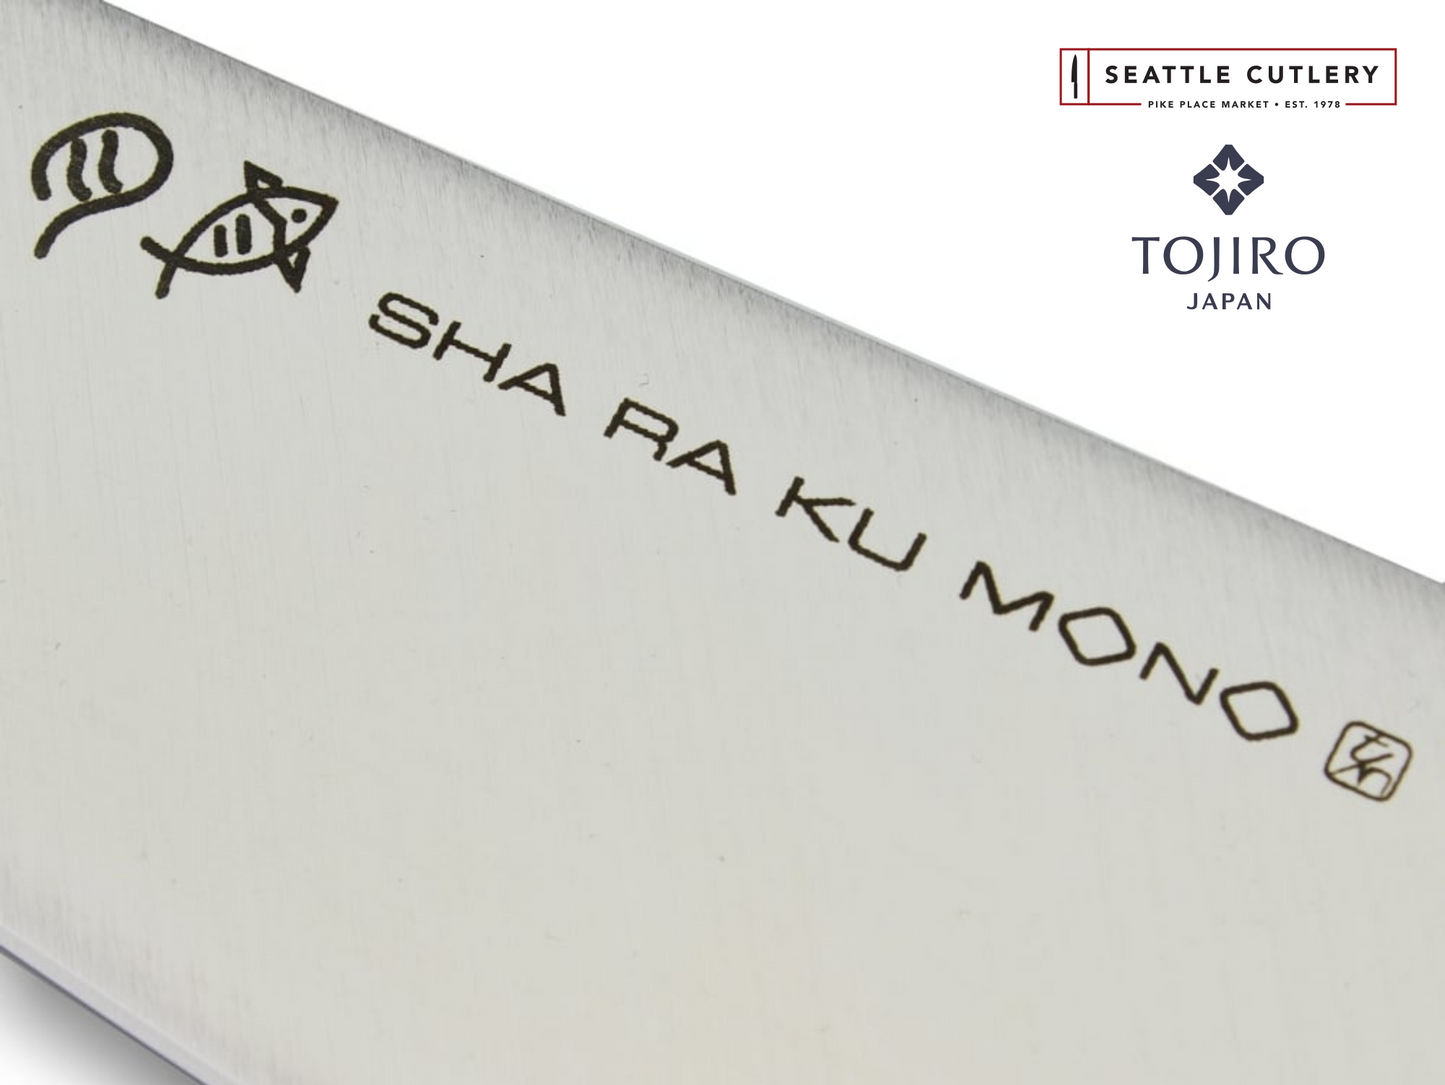 Sha Ra Ku Mono Oriental Knife, 185 mm (7.3")